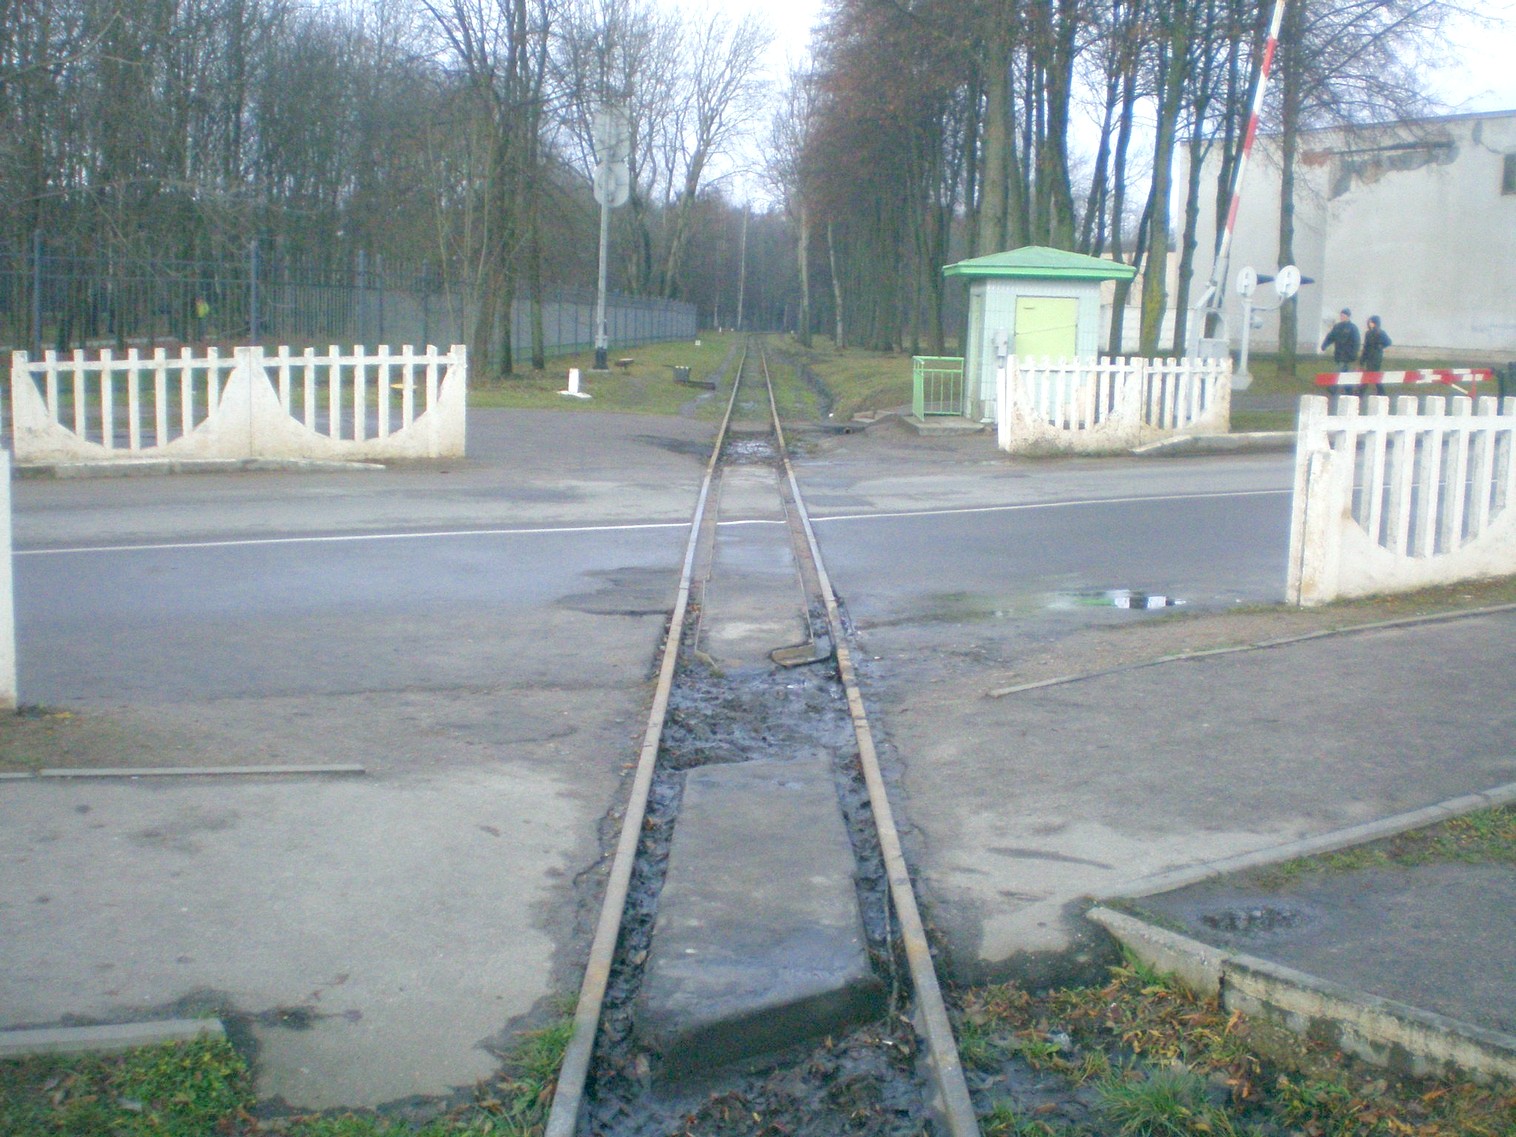 Малая Белорусская (Минская) детская железная дорога  —  фотографии, сделанные в 2008 году (часть 3)